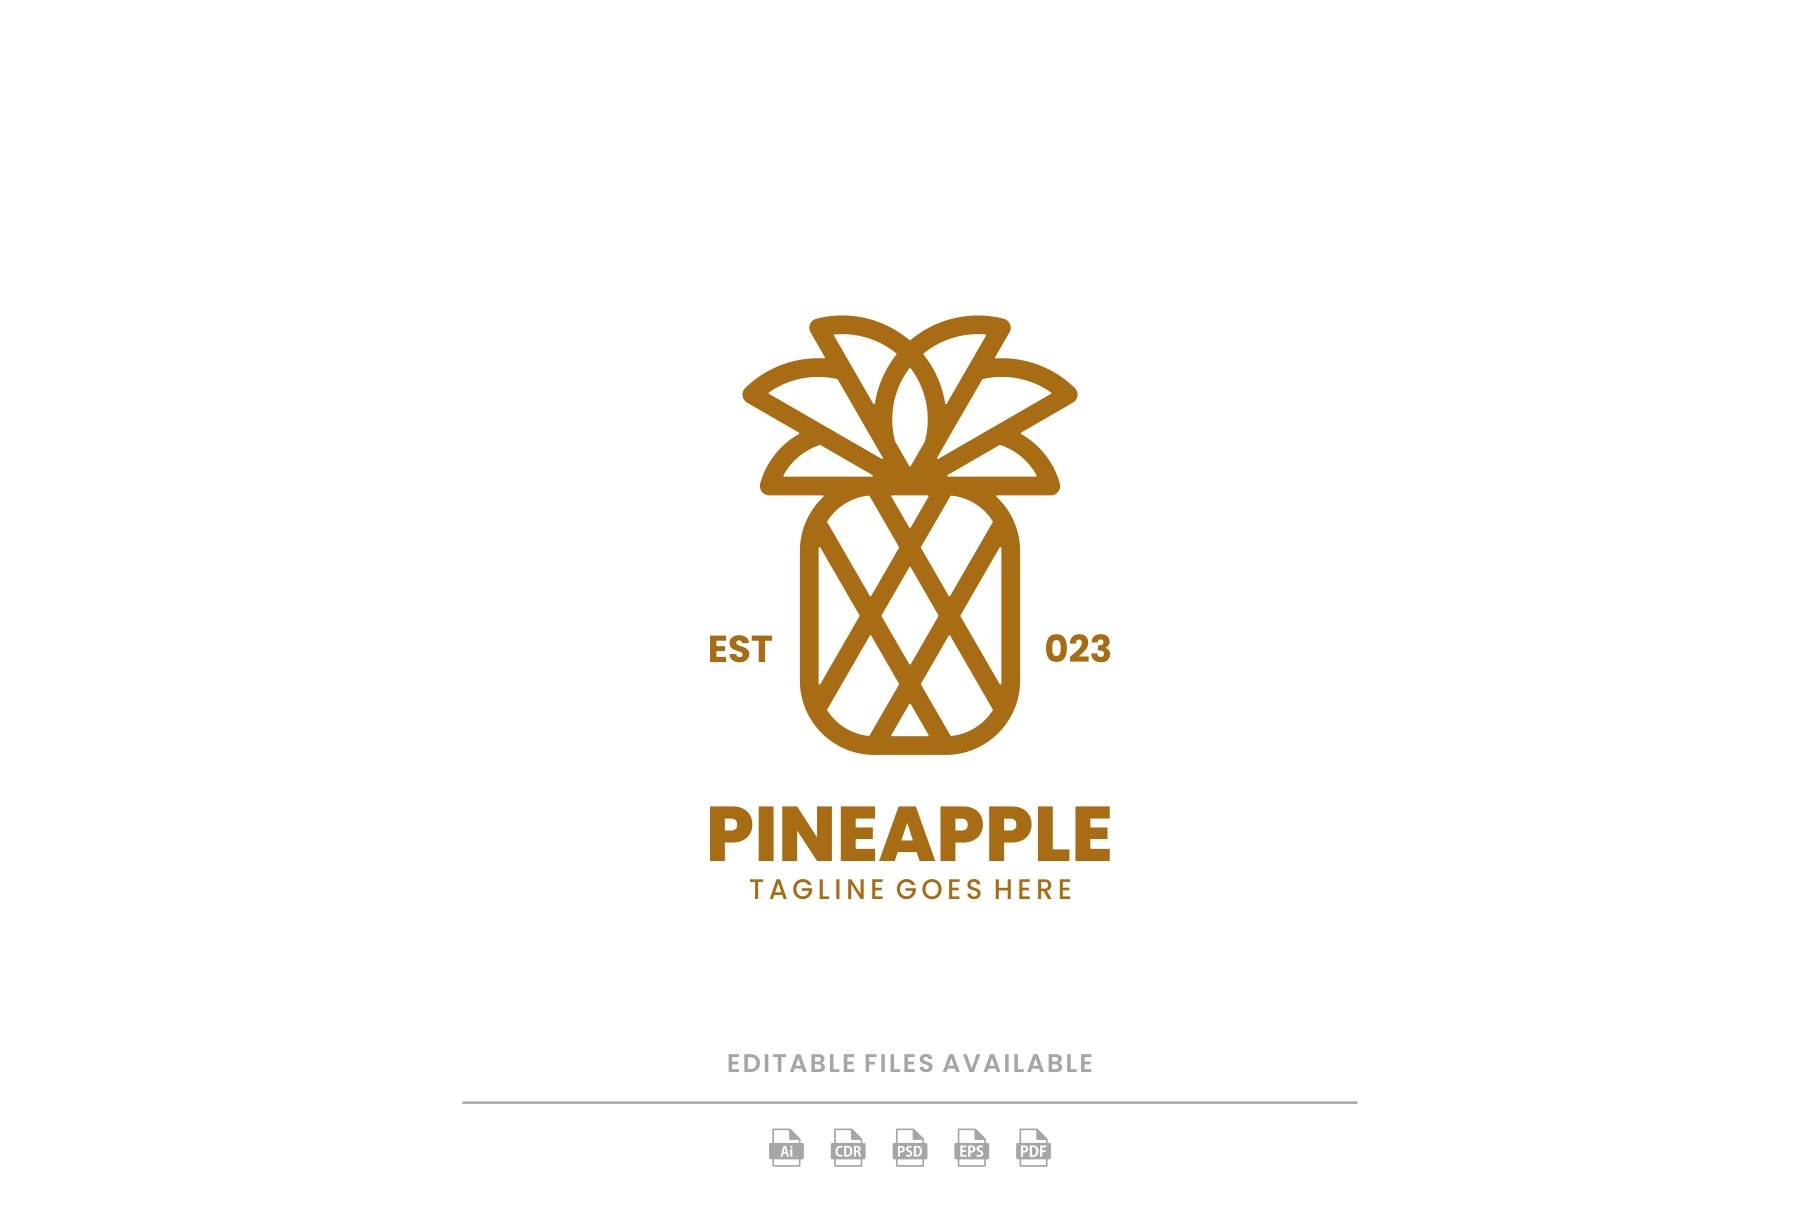 Pineapple Line Art Logo cover image.